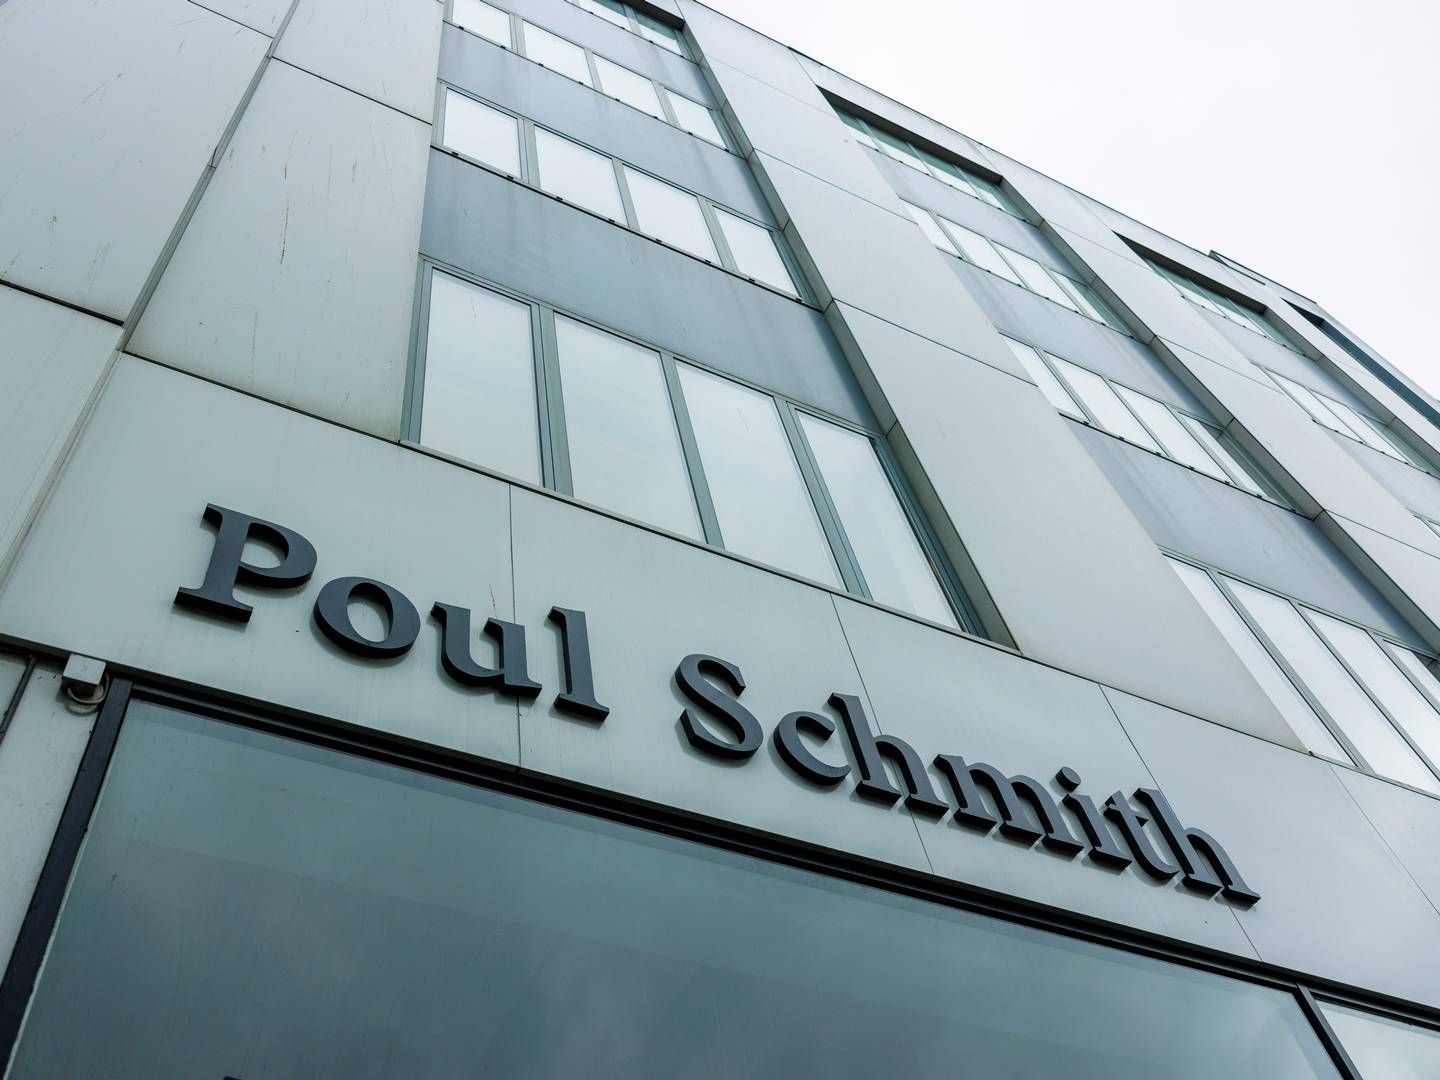 Poul Schmith/Kammeradvokaten er blevet hyret til at undersøge, om de tidligere elever kan få godtgørelse. | Foto: Pr